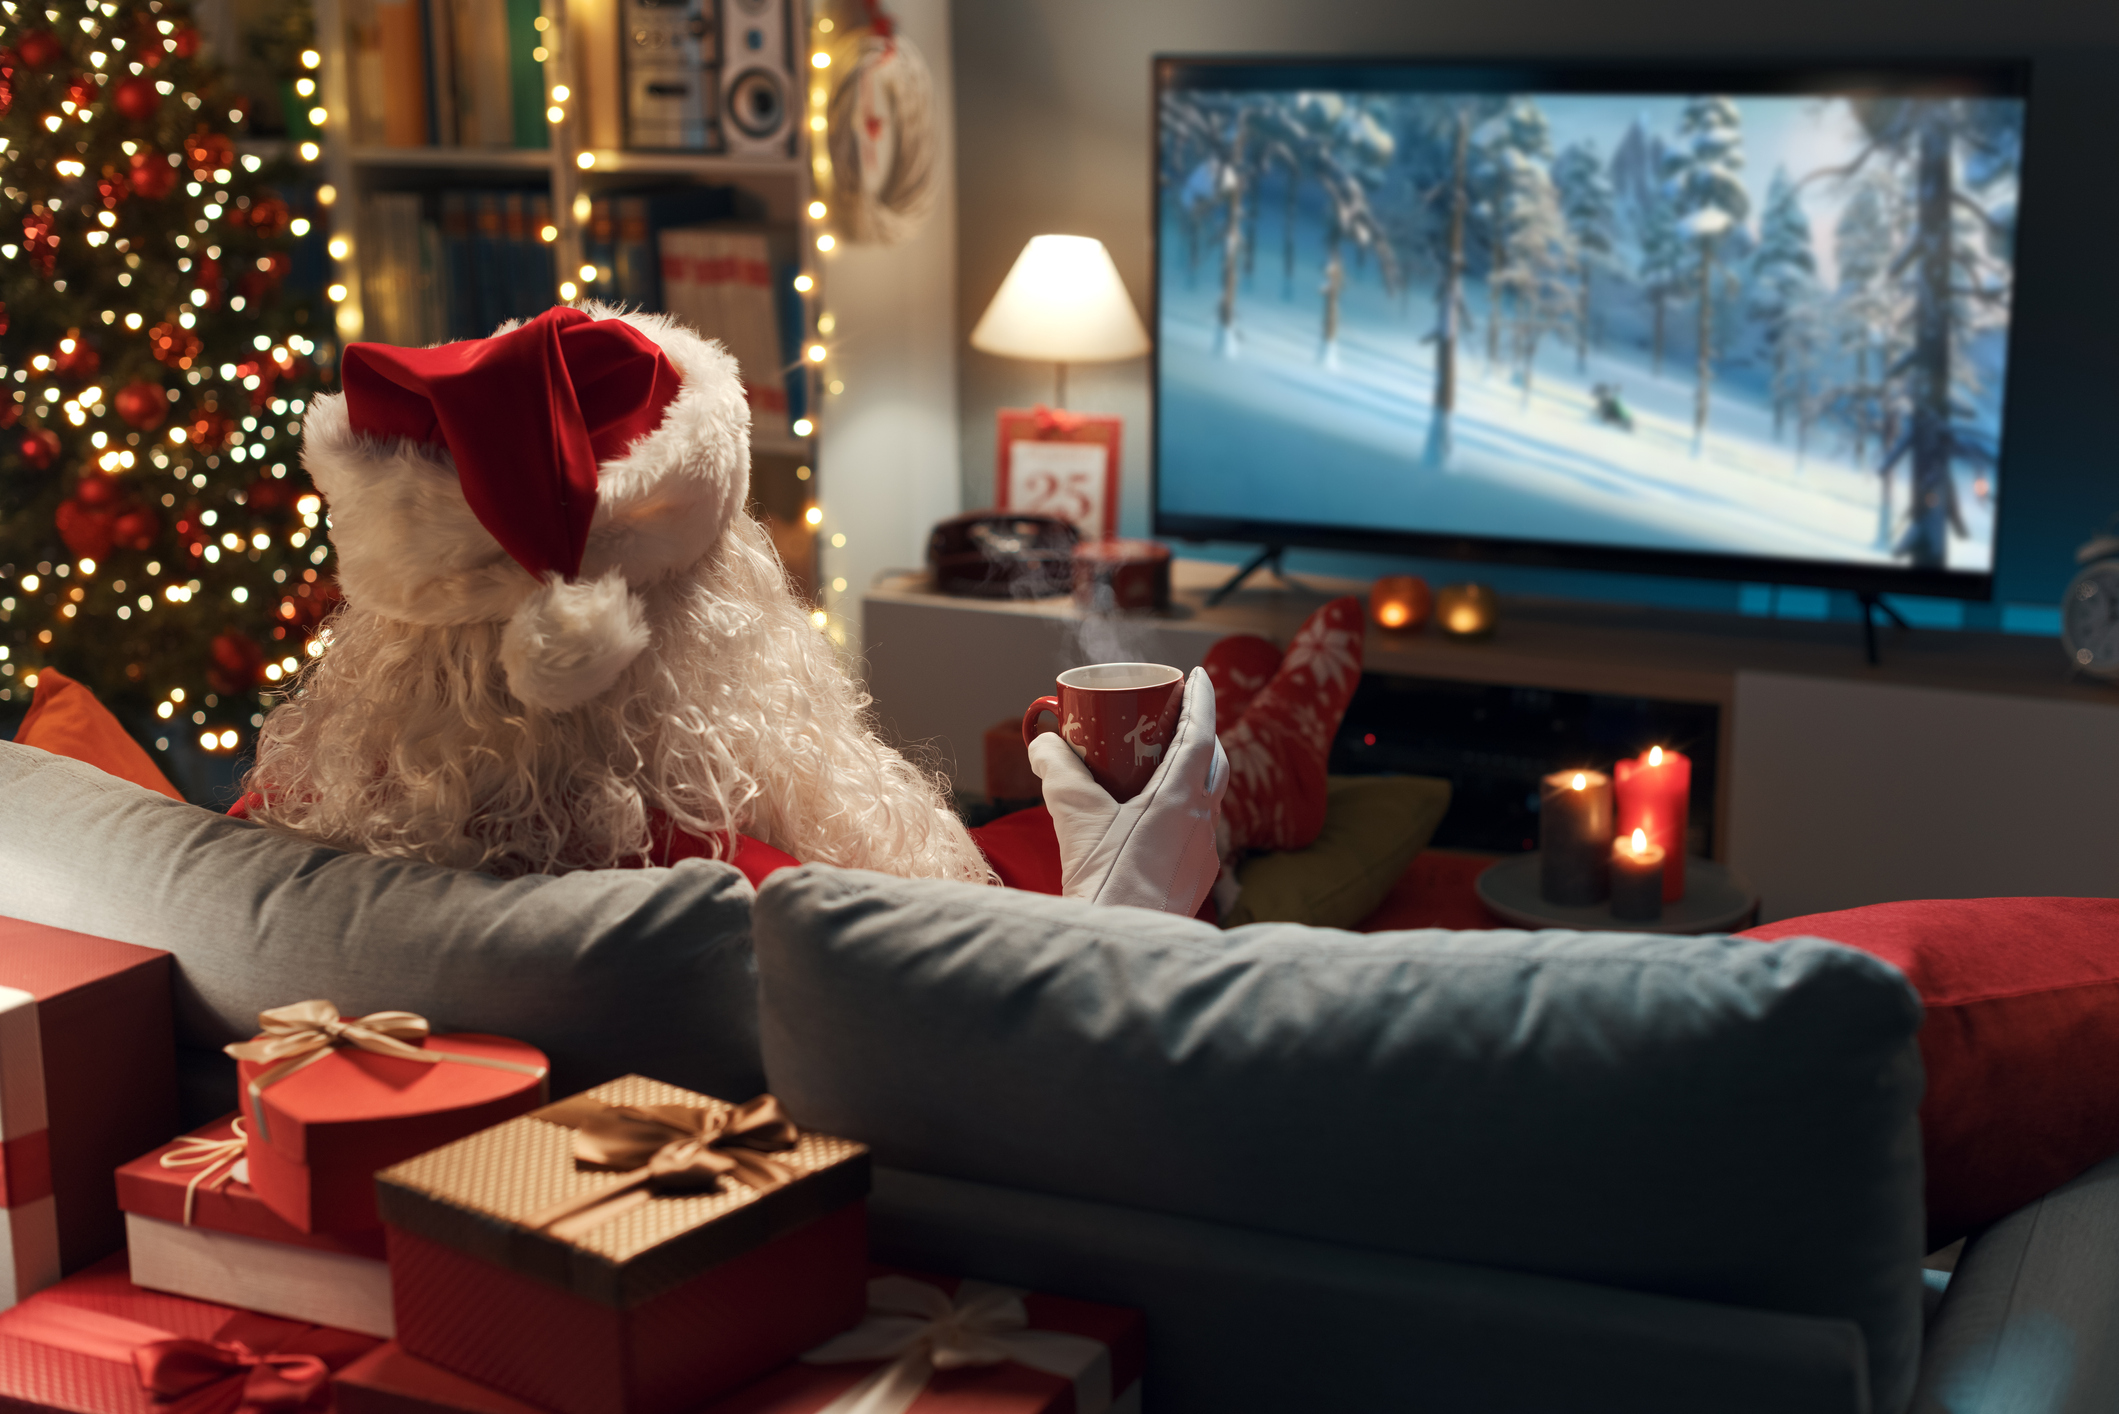 Τι θα κάνουμε φέτος τα Χριστούγεννα; Ατελείωτο cocooning με Christmas ταινίες για όλα τα γούστα!